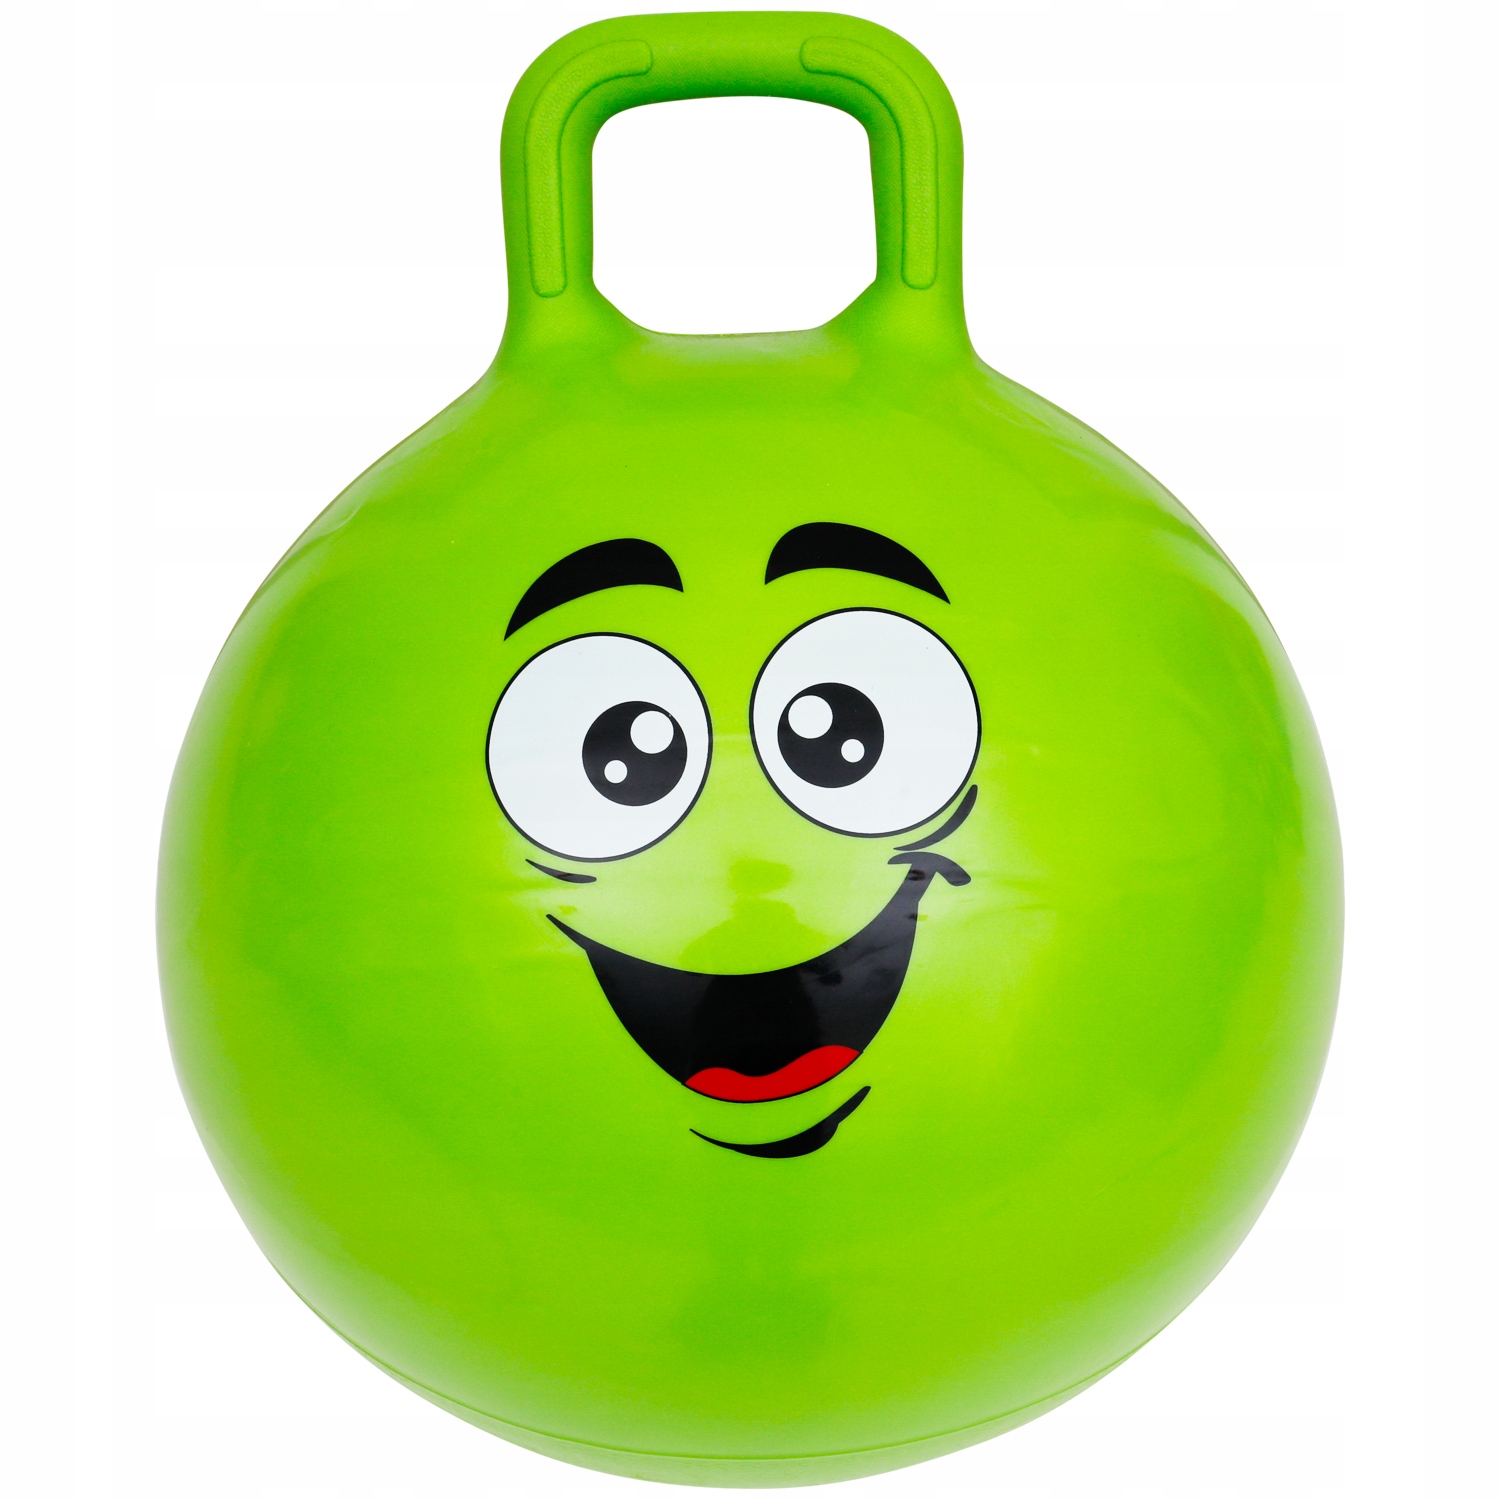 Прыгучий мяч. Мяч для прыжков с ручкой. Мяч-прыгун с ручкой. Мяч с ручкой зеленый. Резиновый мяч с ручками.